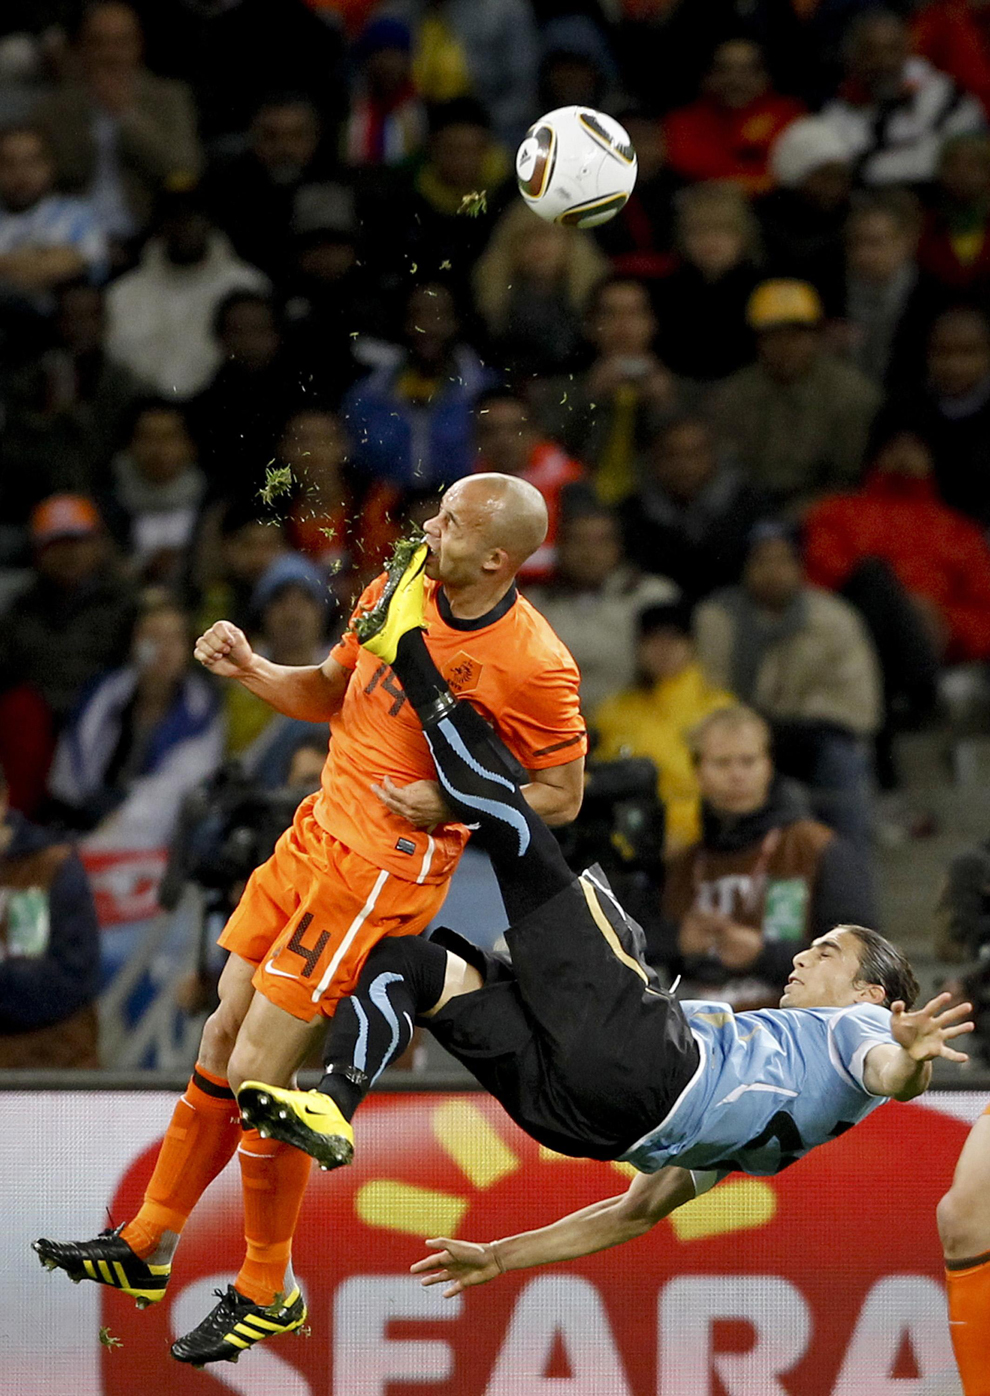 Футболист, падающий на землю, пнул в лицо другого игрока.